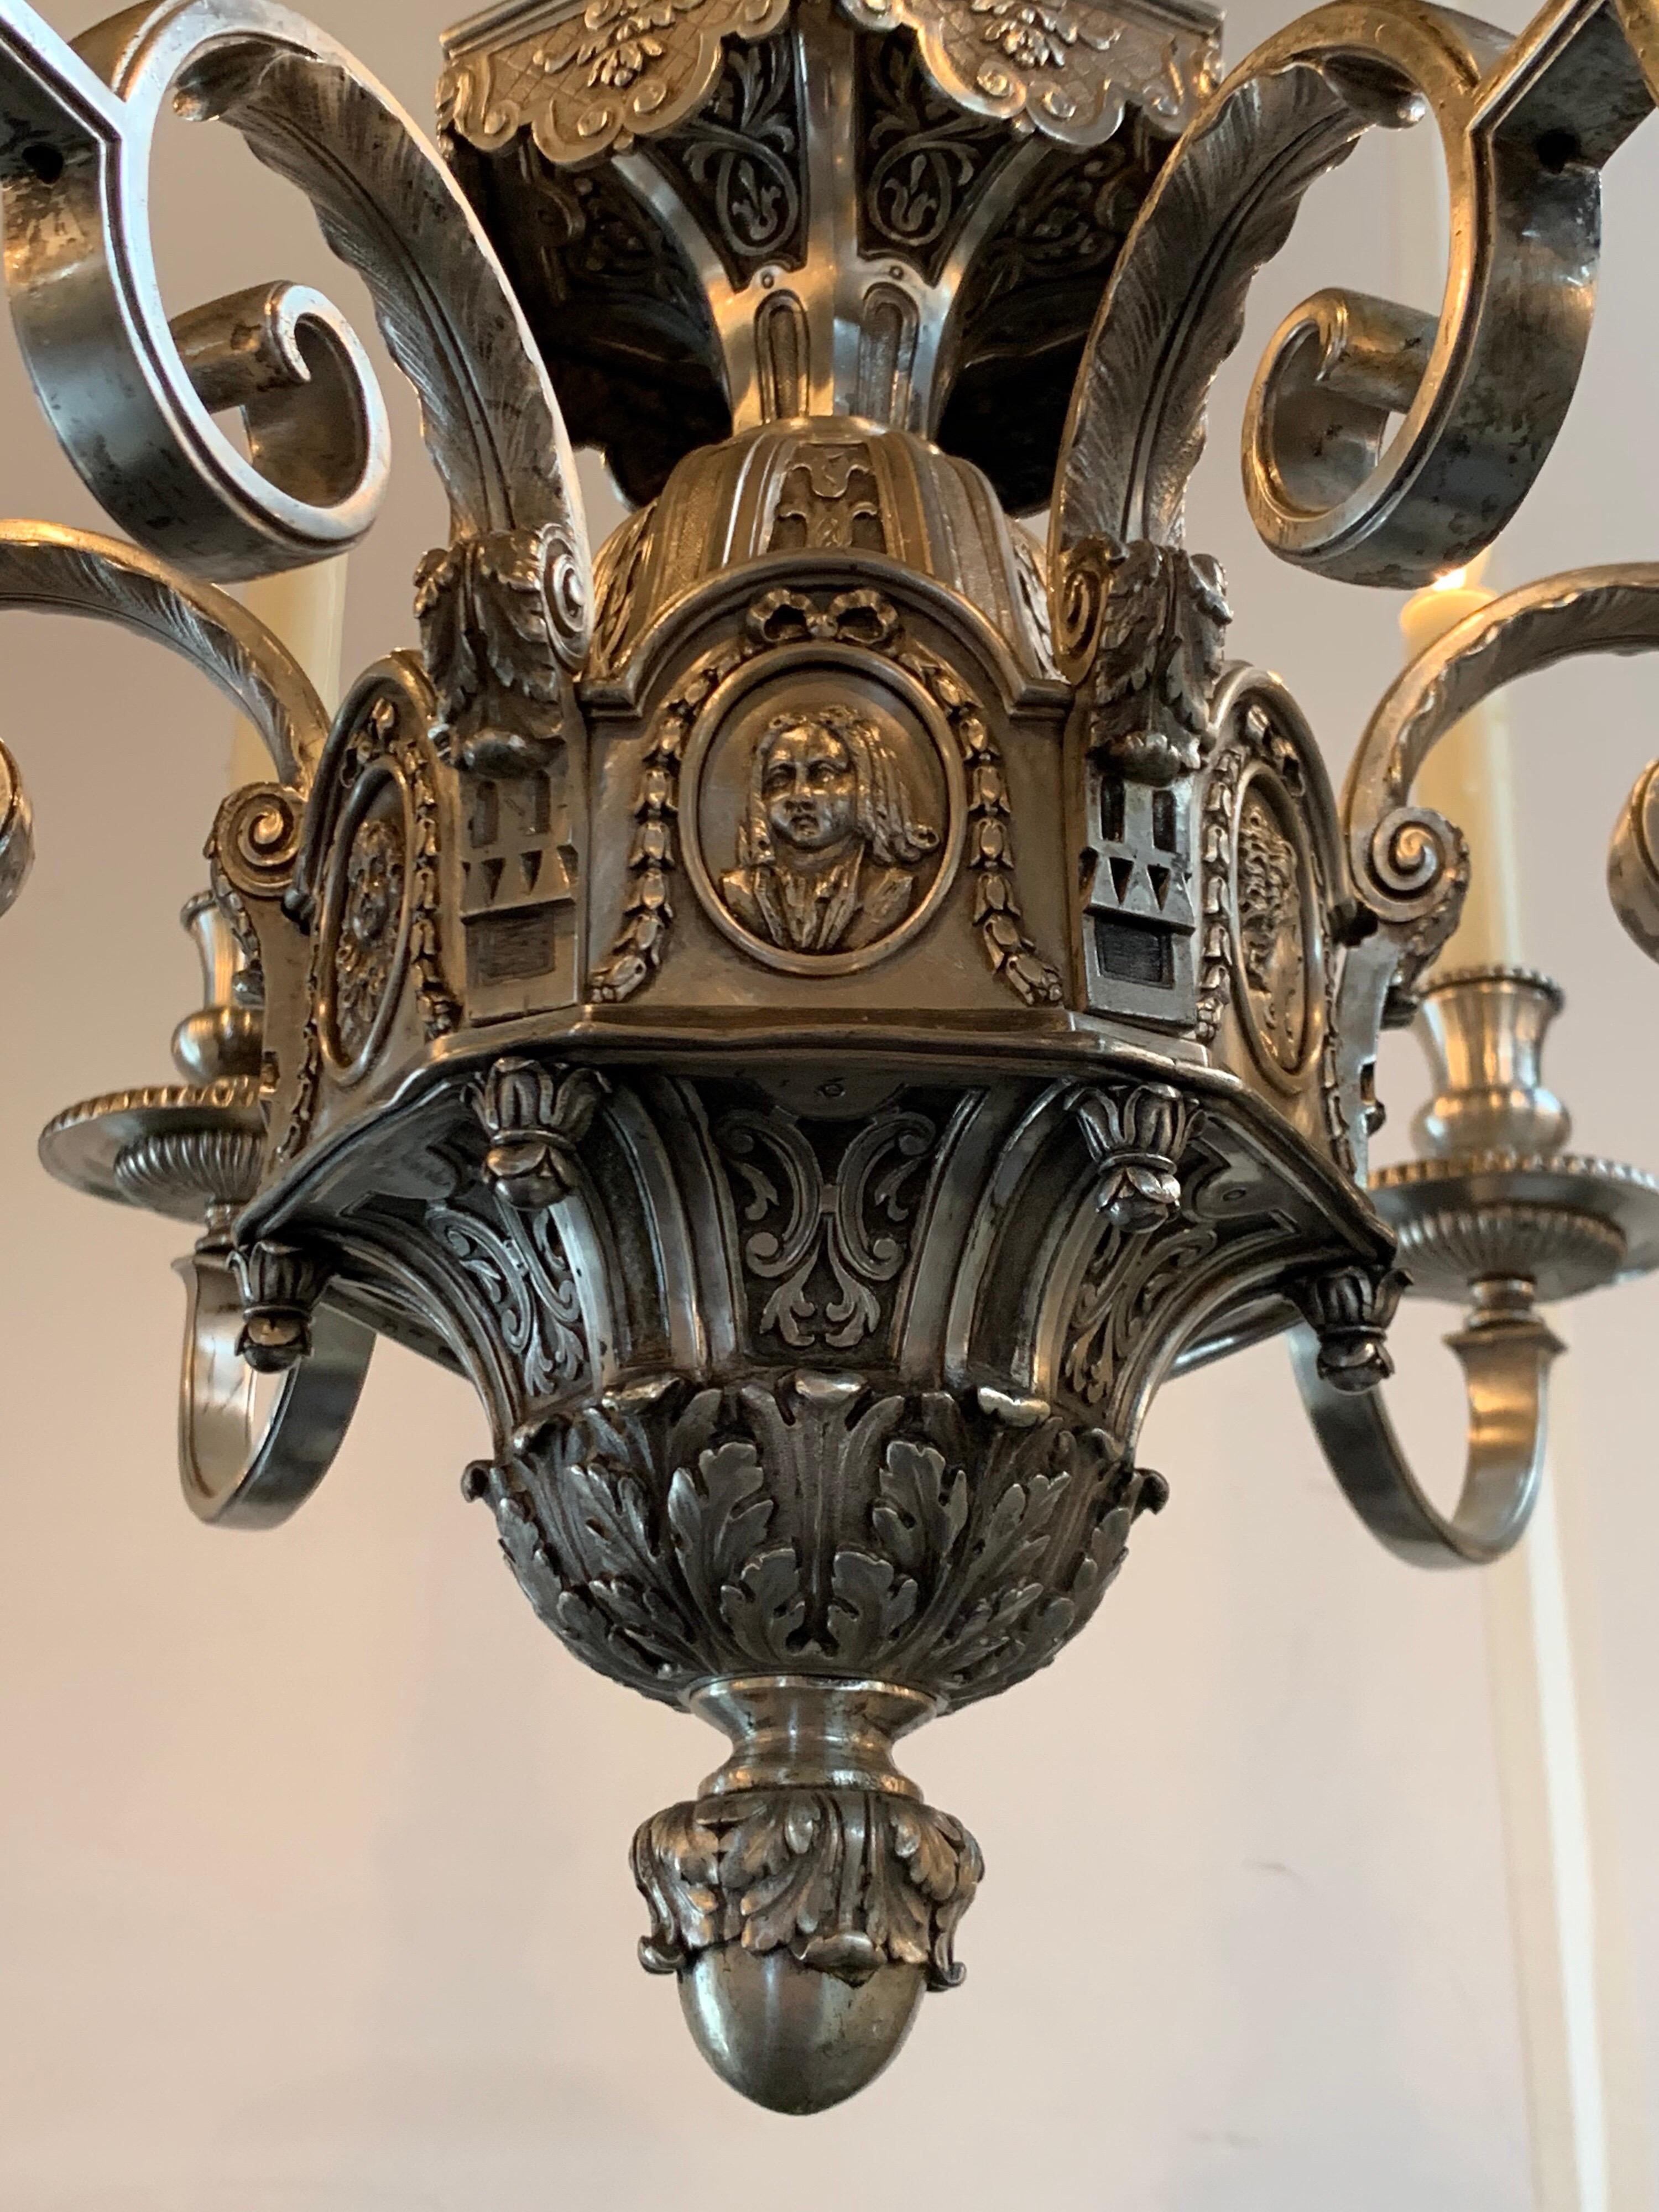 Schöner englischer Kronleuchter im neoklassizistischen Stil des 19. Jahrhunderts mit 6 Lichtern. Wunderschönes Finish in Silber und Bronze mit erstaunlichen dekorativen Details.